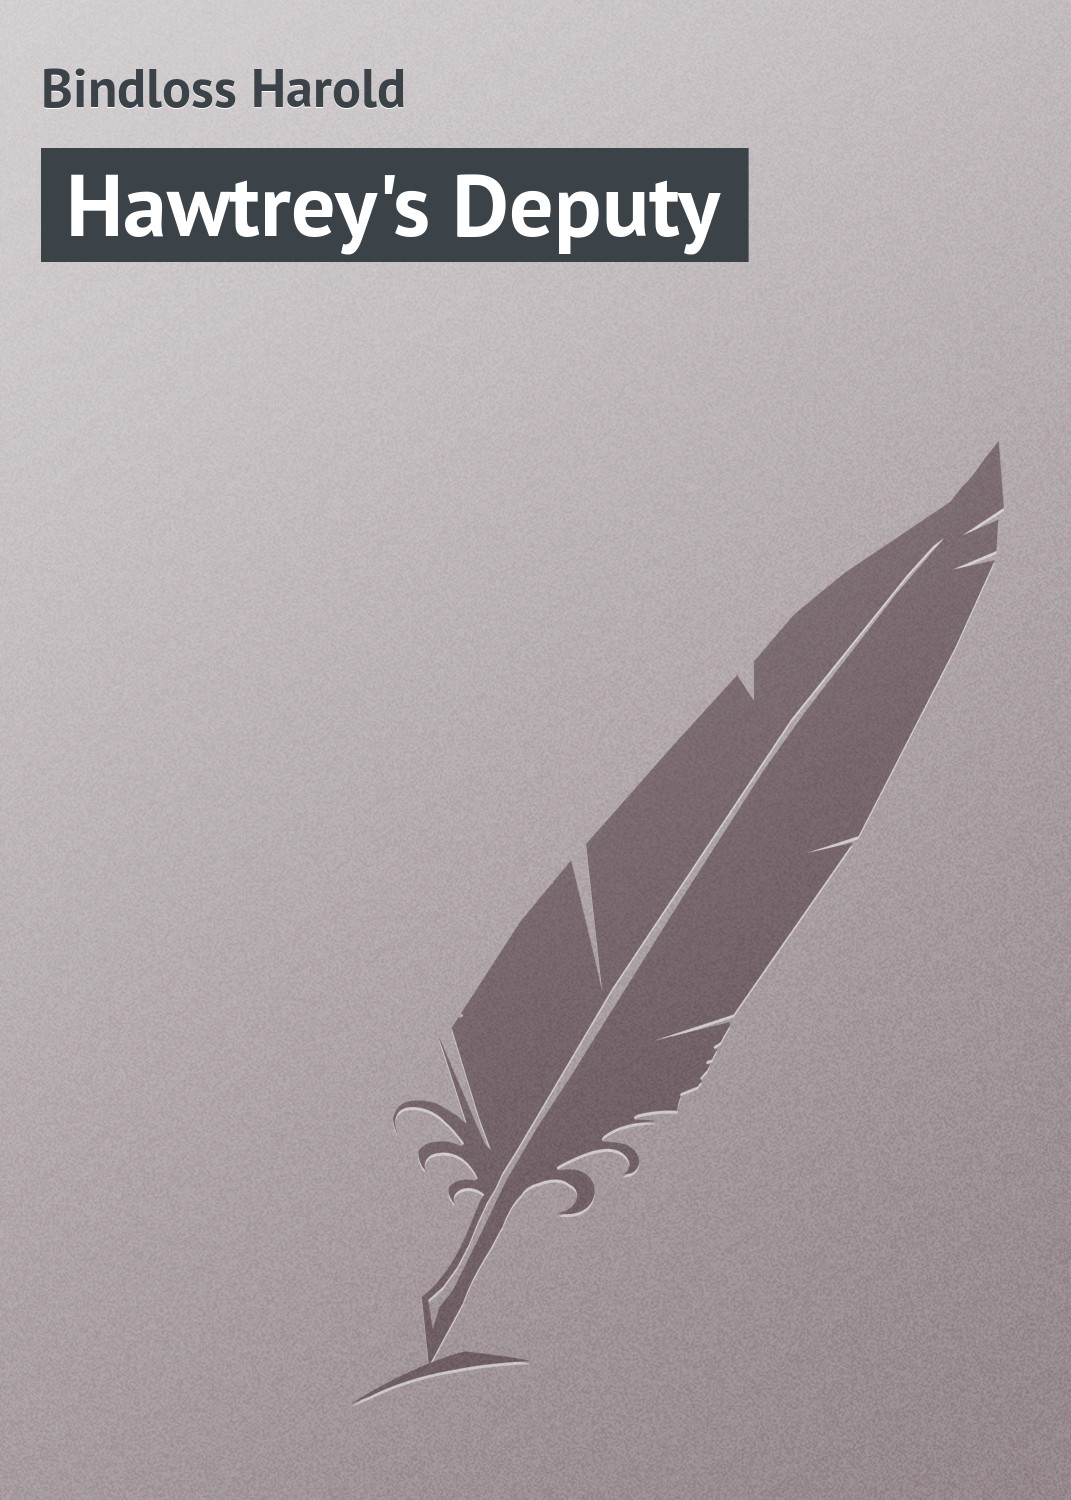 Книга Hawtrey's Deputy из серии , созданная Harold Bindloss, может относится к жанру Зарубежная классика. Стоимость электронной книги Hawtrey's Deputy с идентификатором 23166083 составляет 5.99 руб.